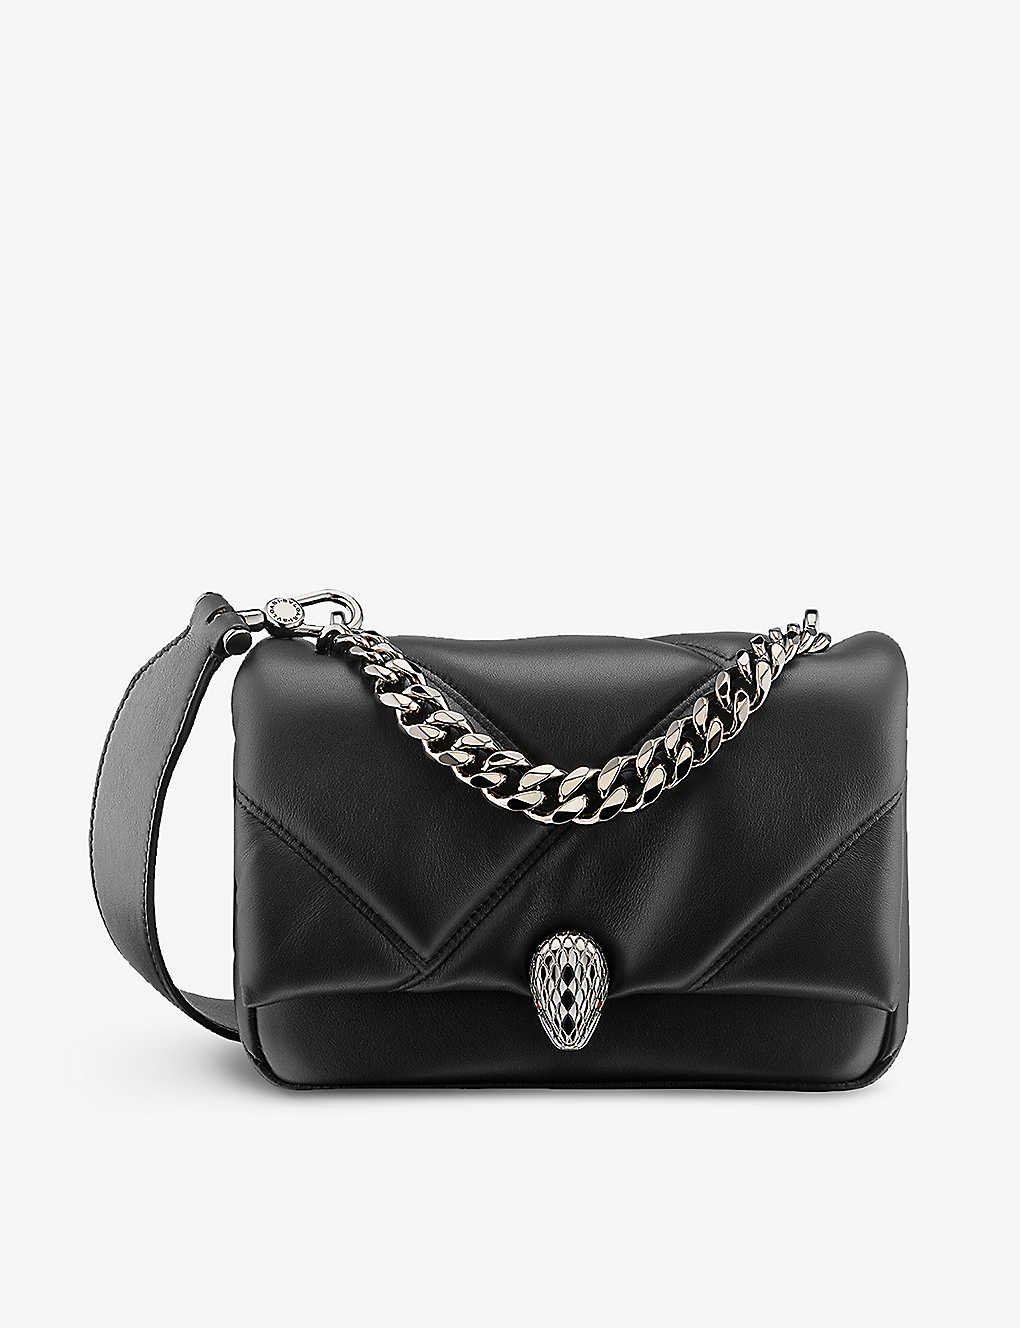 Bvlgari Serpenti Maxi Cabochon Small Leather Cross-body Bag In Black